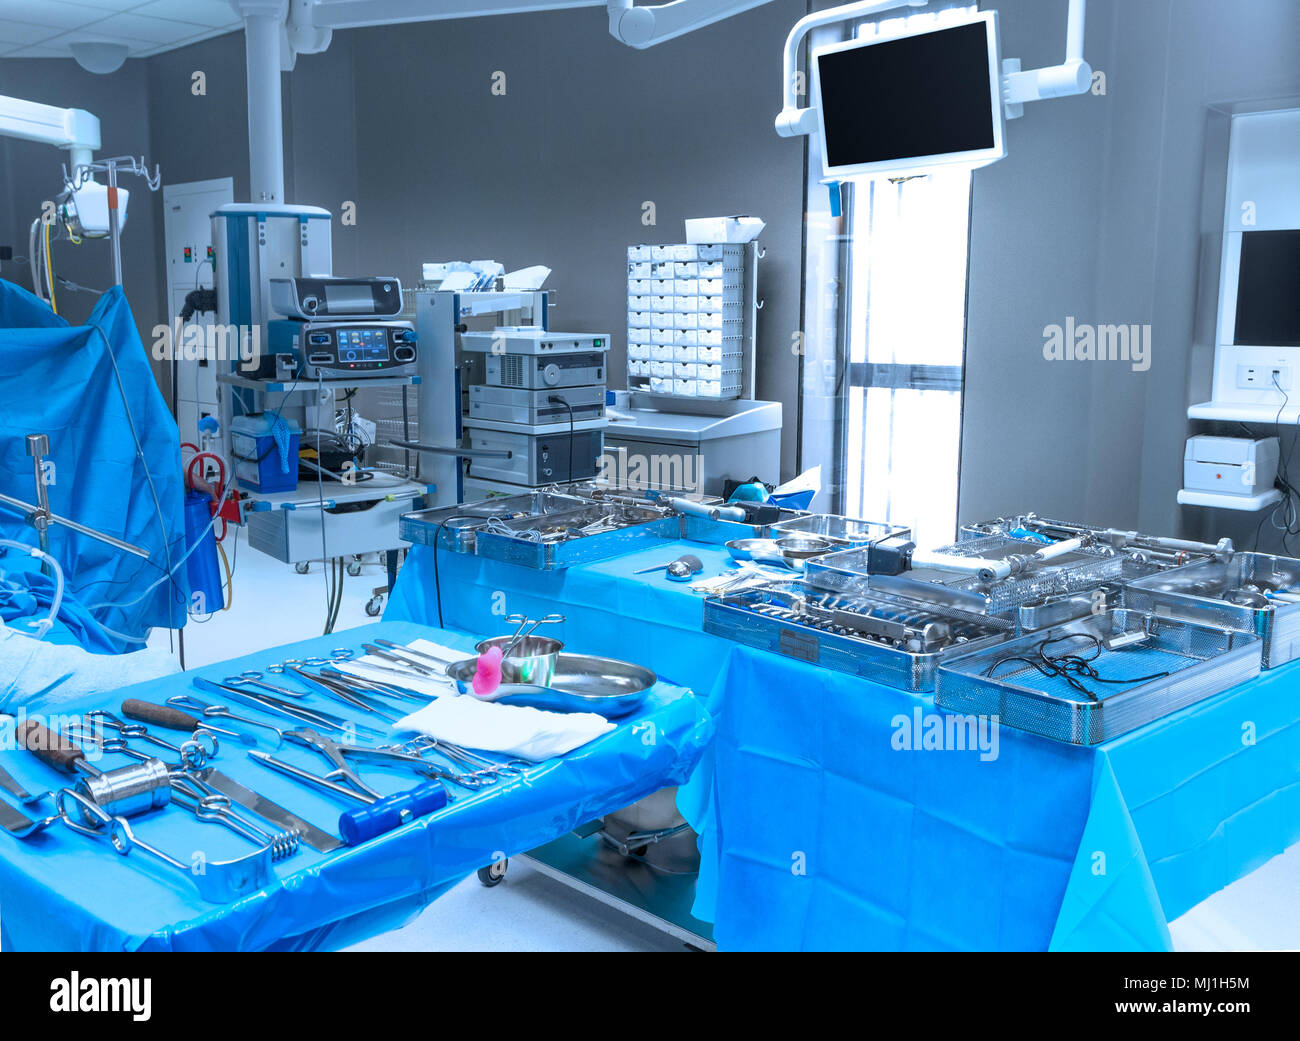 Les équipements hospitaliers et médicaux périphériques dans une salle d'opération moderne. Banque D'Images